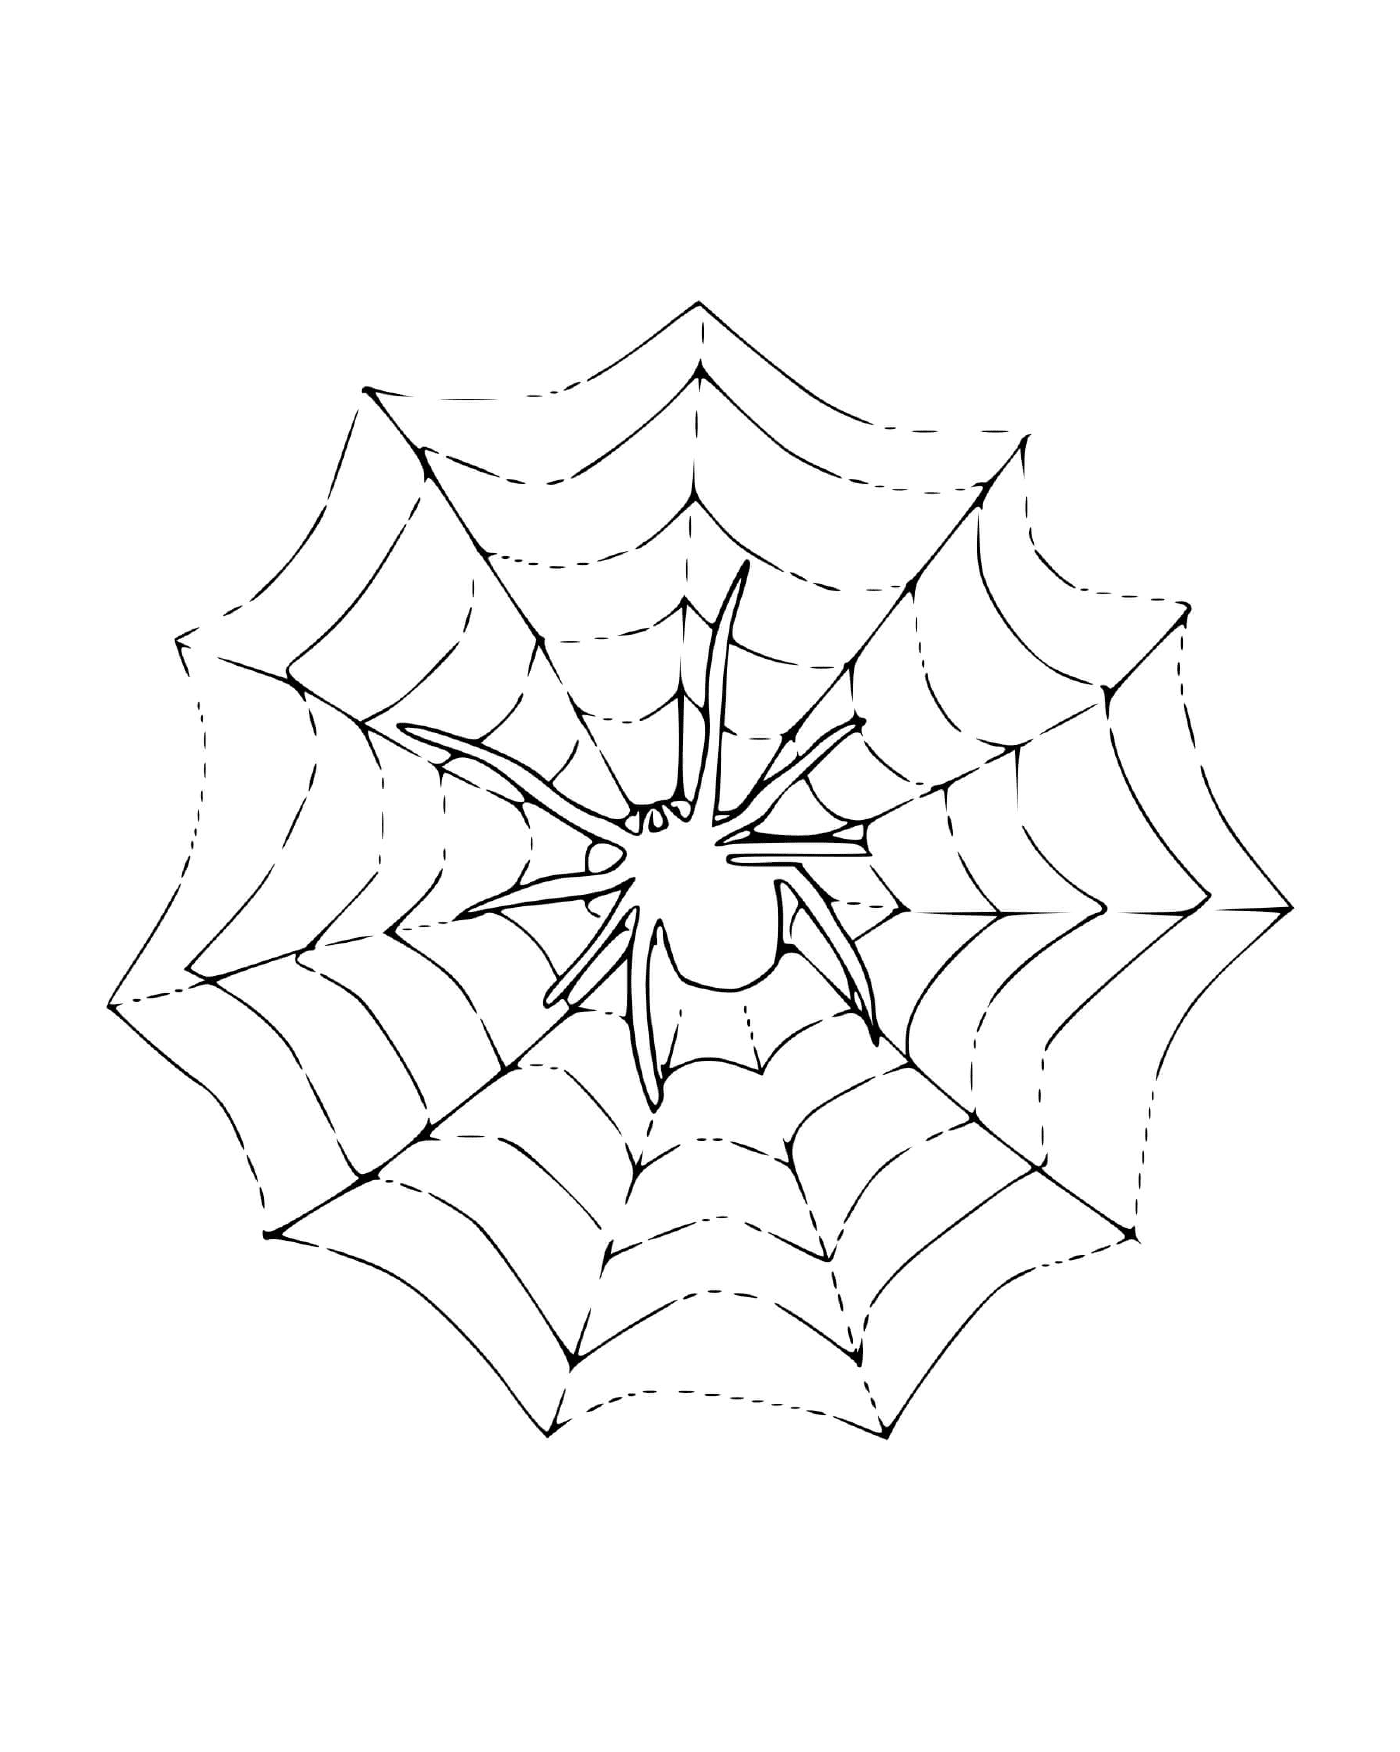  Una araña sentada en una telaraña 